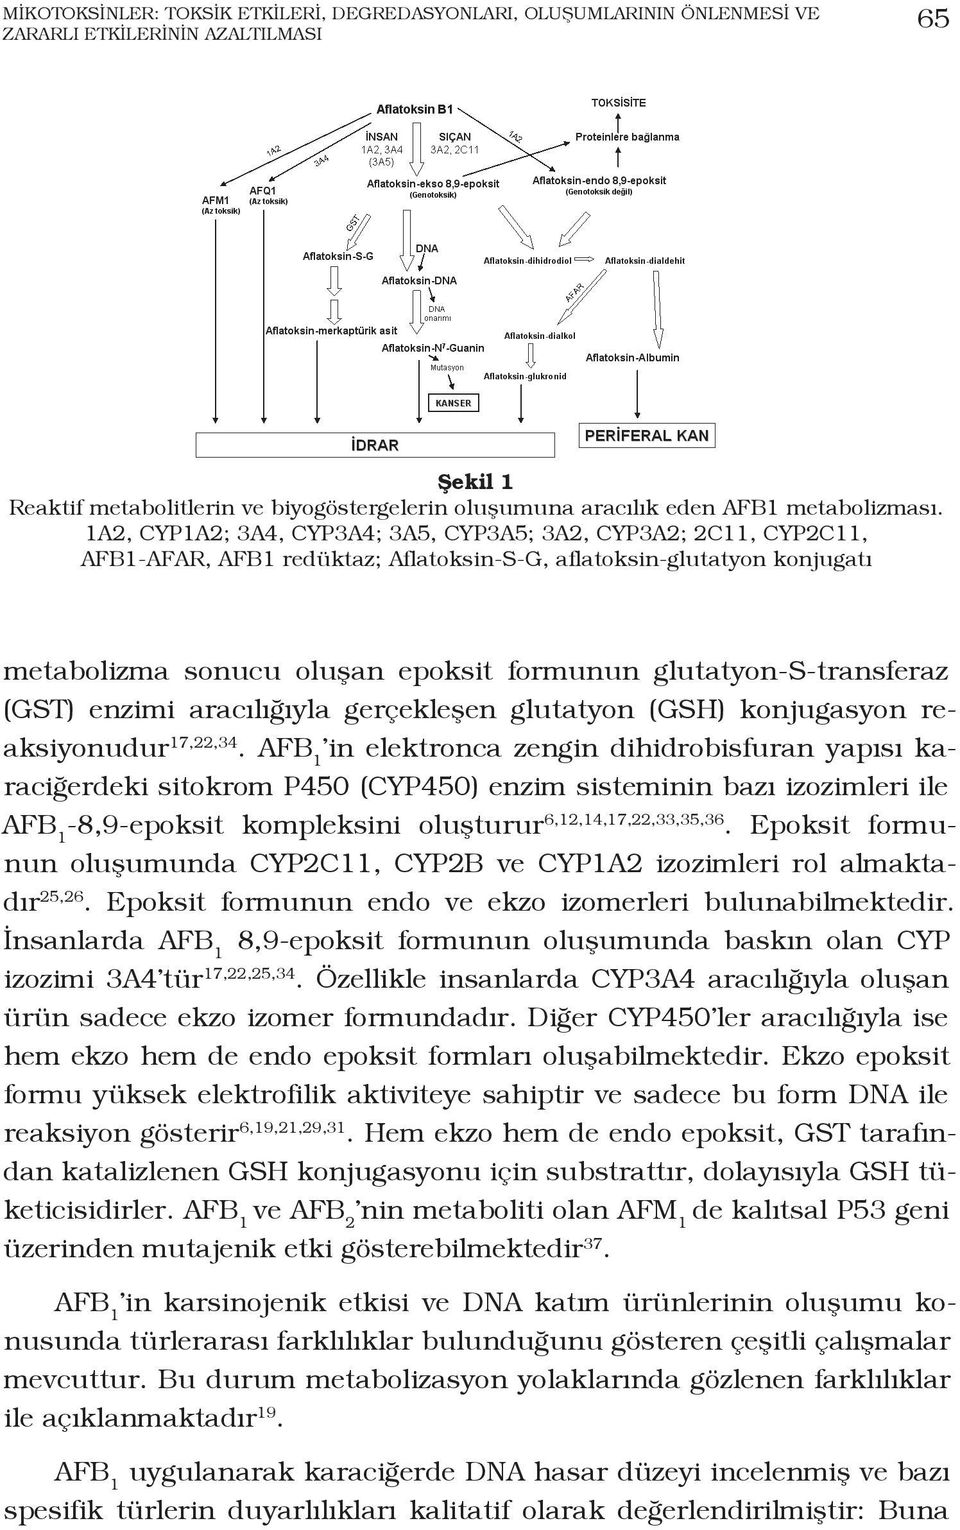 1A2, CYP1A2; 3A4, CYP3A4; 3A5, CYP3A5; 3A2, CYP3A2; 2C11, CYP2C11, AFB1-AFAR, AFB1 redüktaz; Aflatoksin-S-G, aflatoksin-glutatyon konjugatı metabolizma sonucu oluşan epoksit formunun